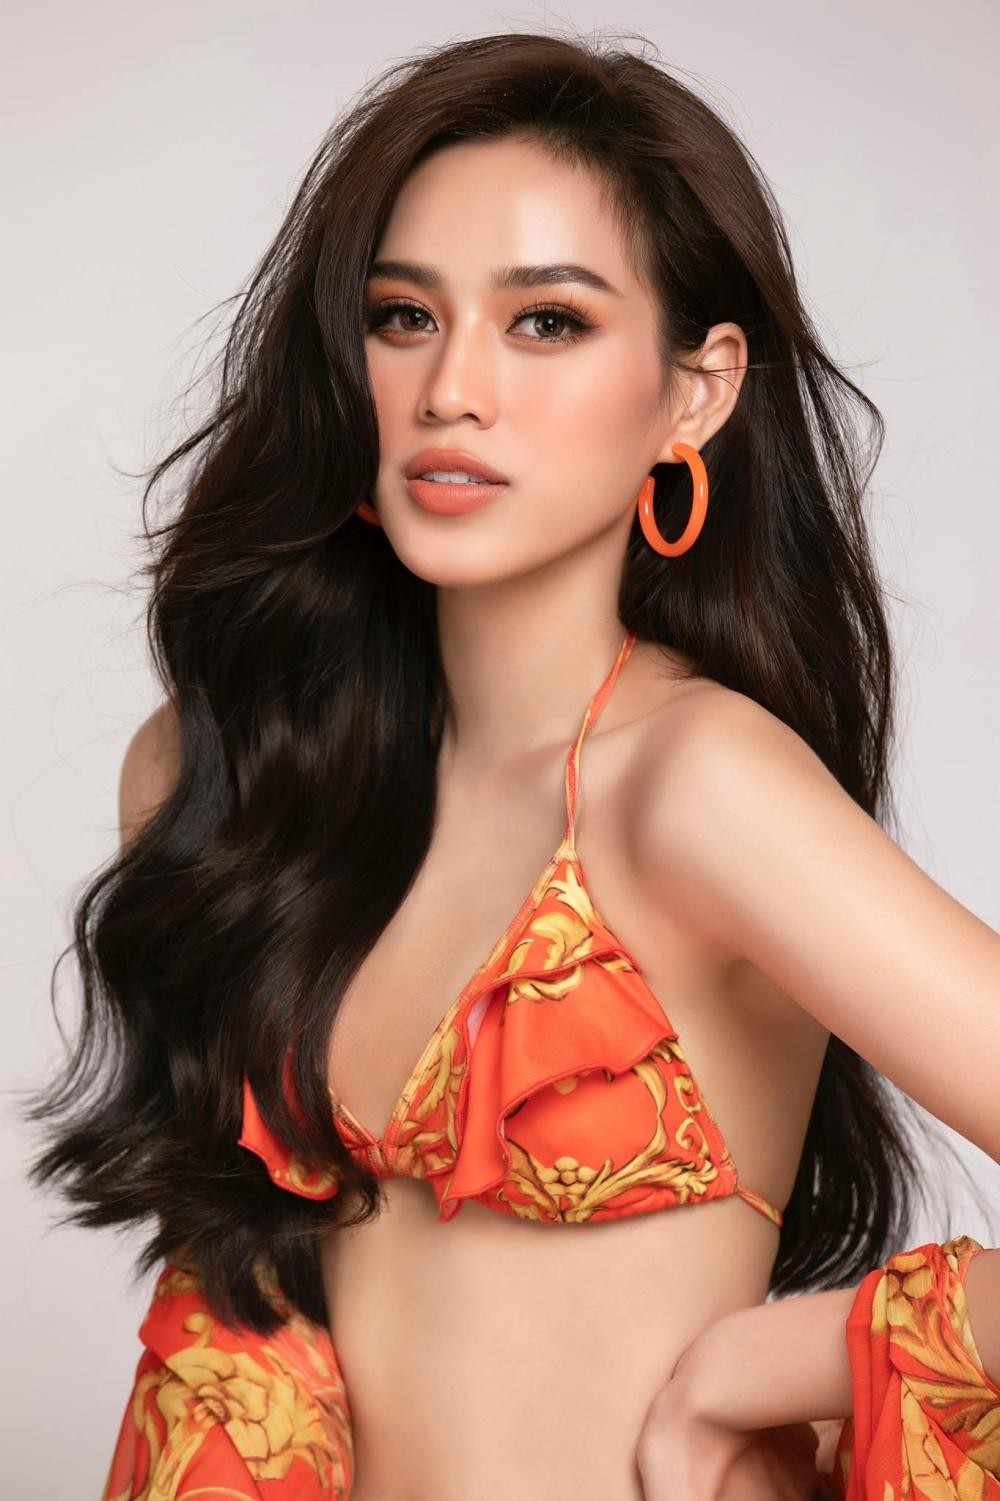 Hoa hậu Đỗ Thị Hà khoe ảnh bikini mới đẹp rực rỡ, mong tiếp tục được bình chọn - Ảnh 4.